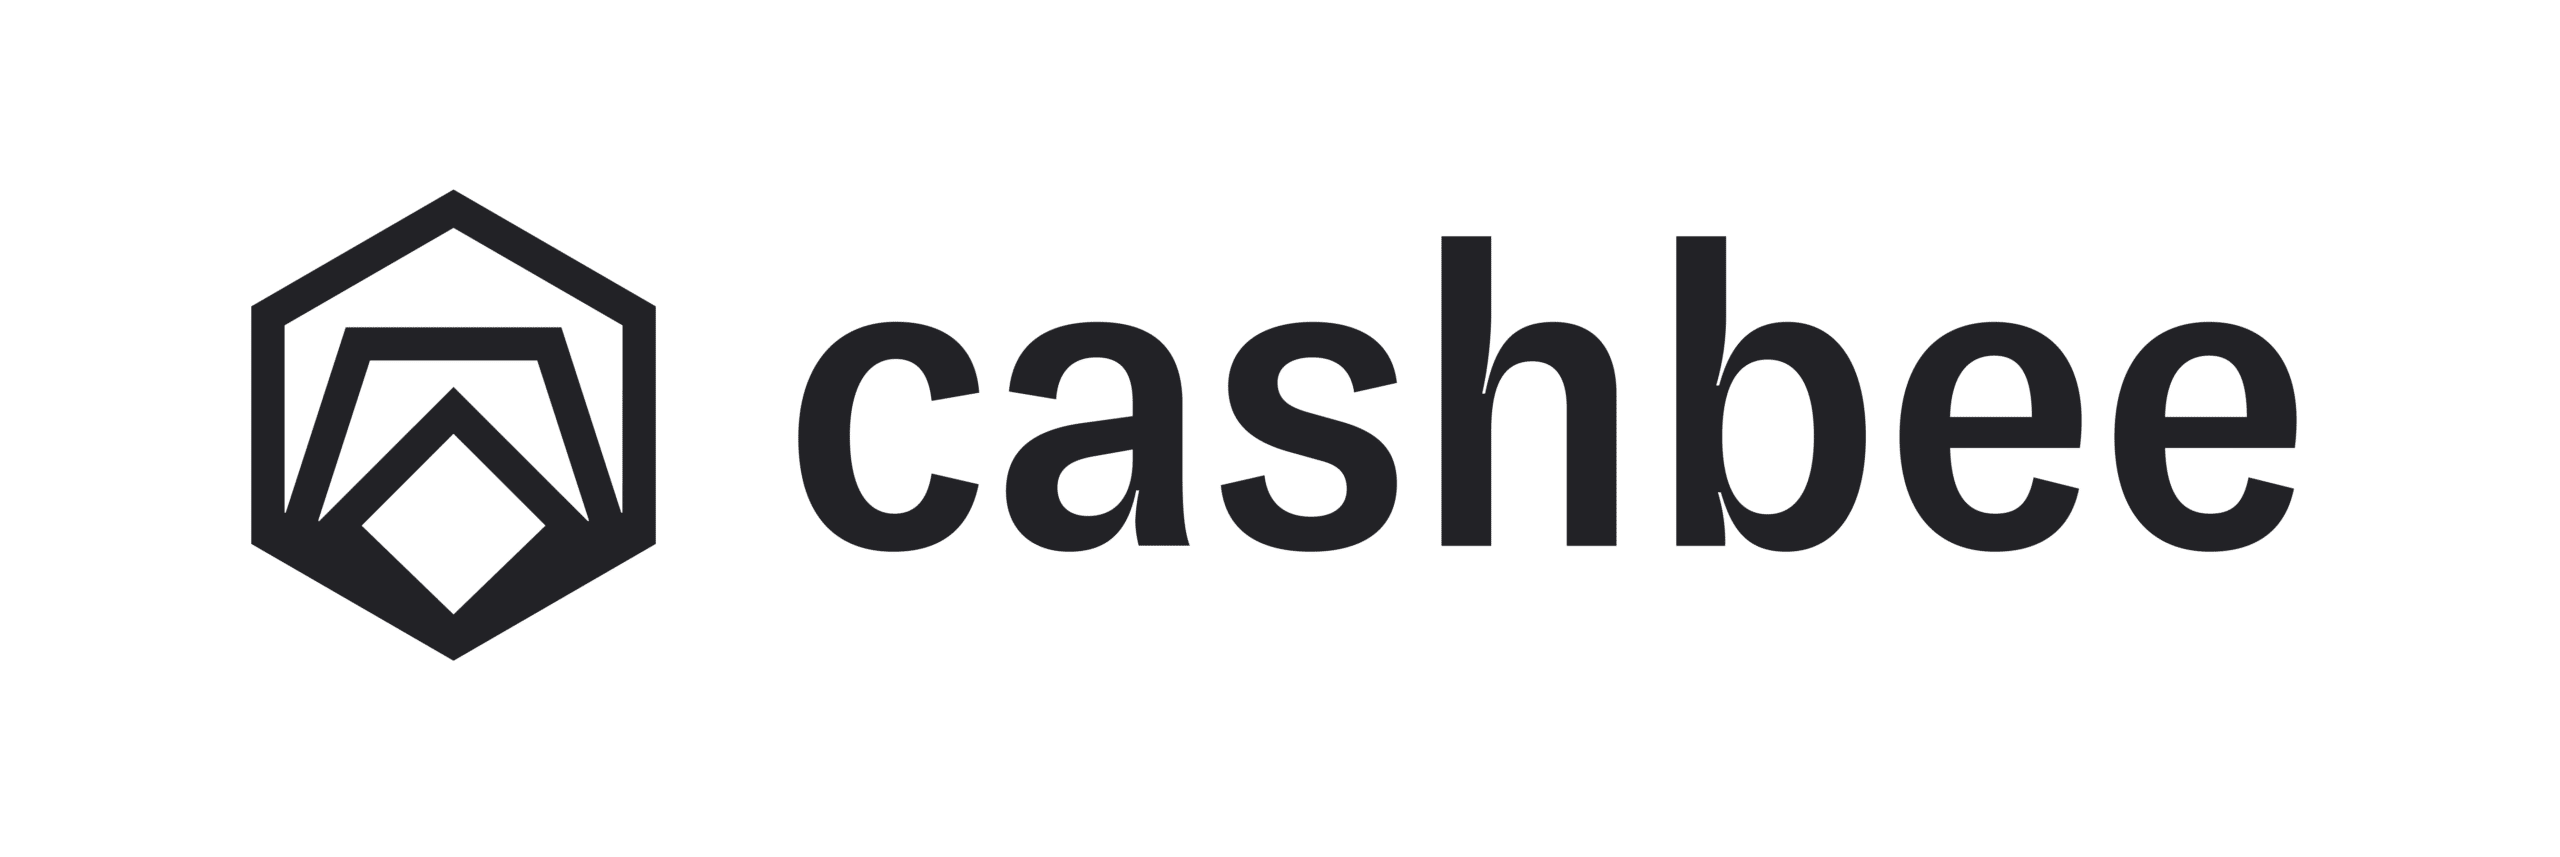 Cashbee : Le compte épargne rémunéré de My Money Bank